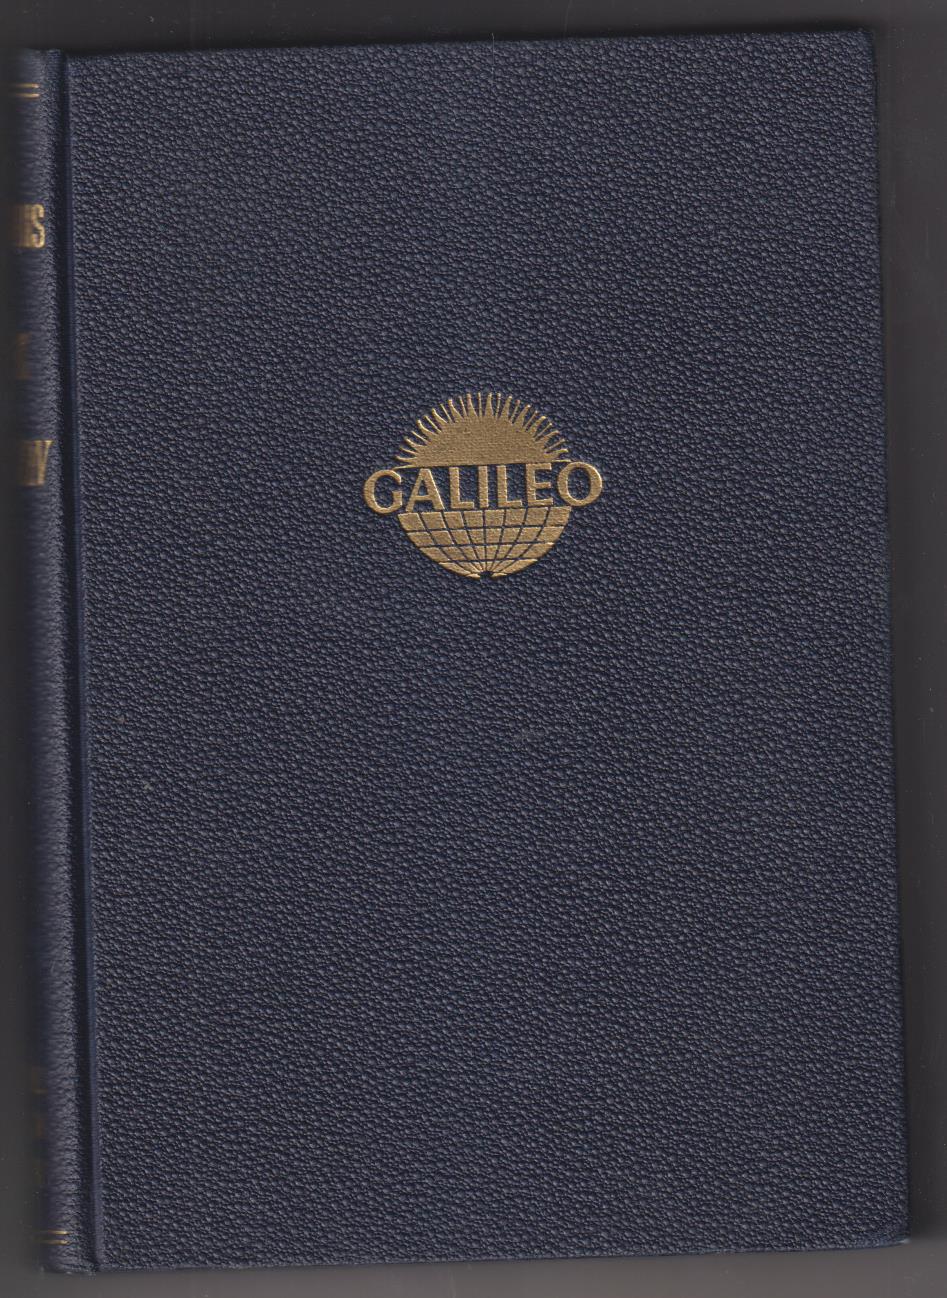 William Voris. Control de Producción. Galileo 1967